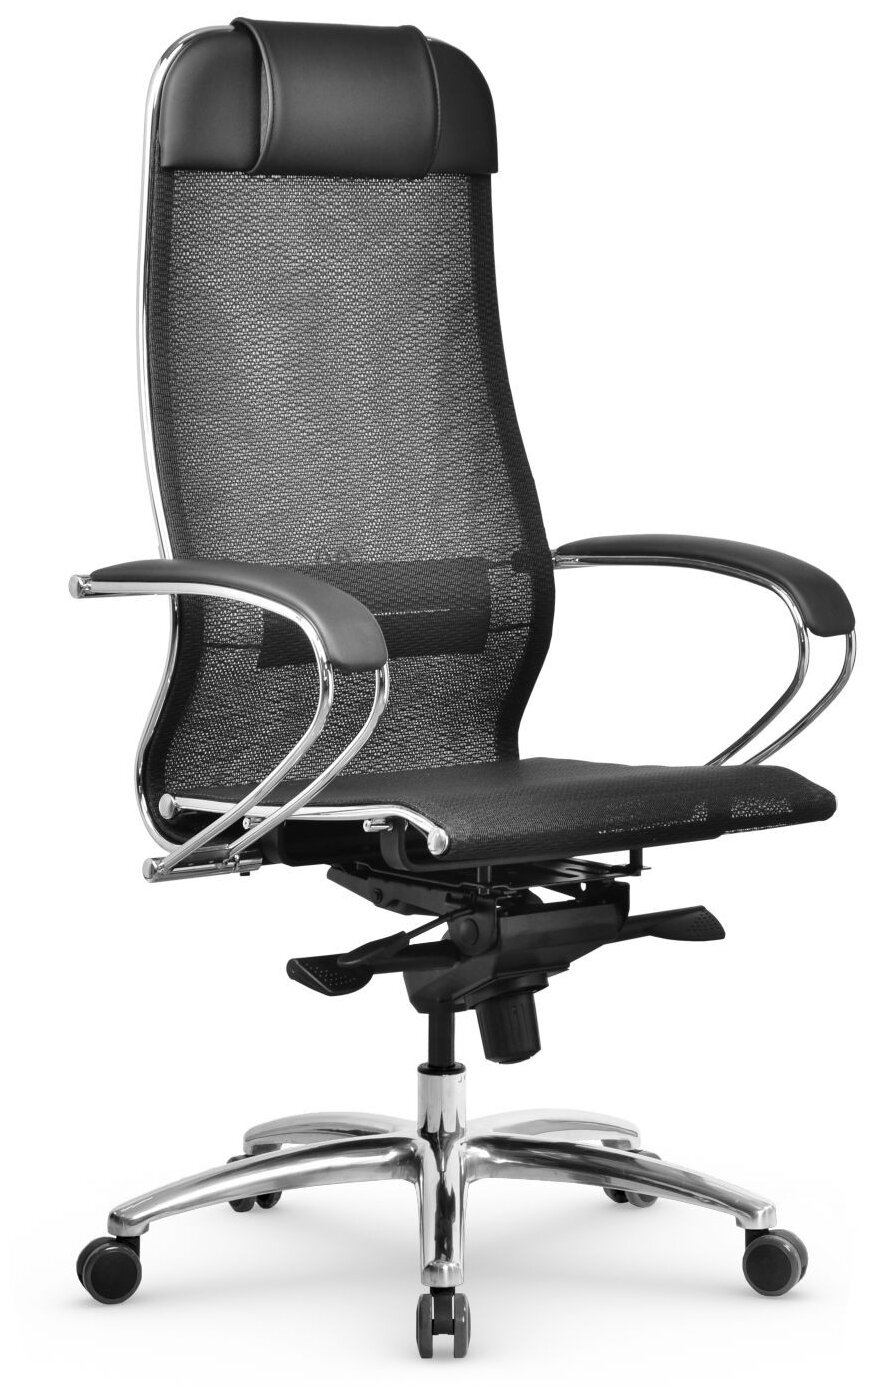 Компьютерное кресло Метта Samurai S-1.041 офисное, обивка: текстиль/искусственная кожа, цвет: черный плюс